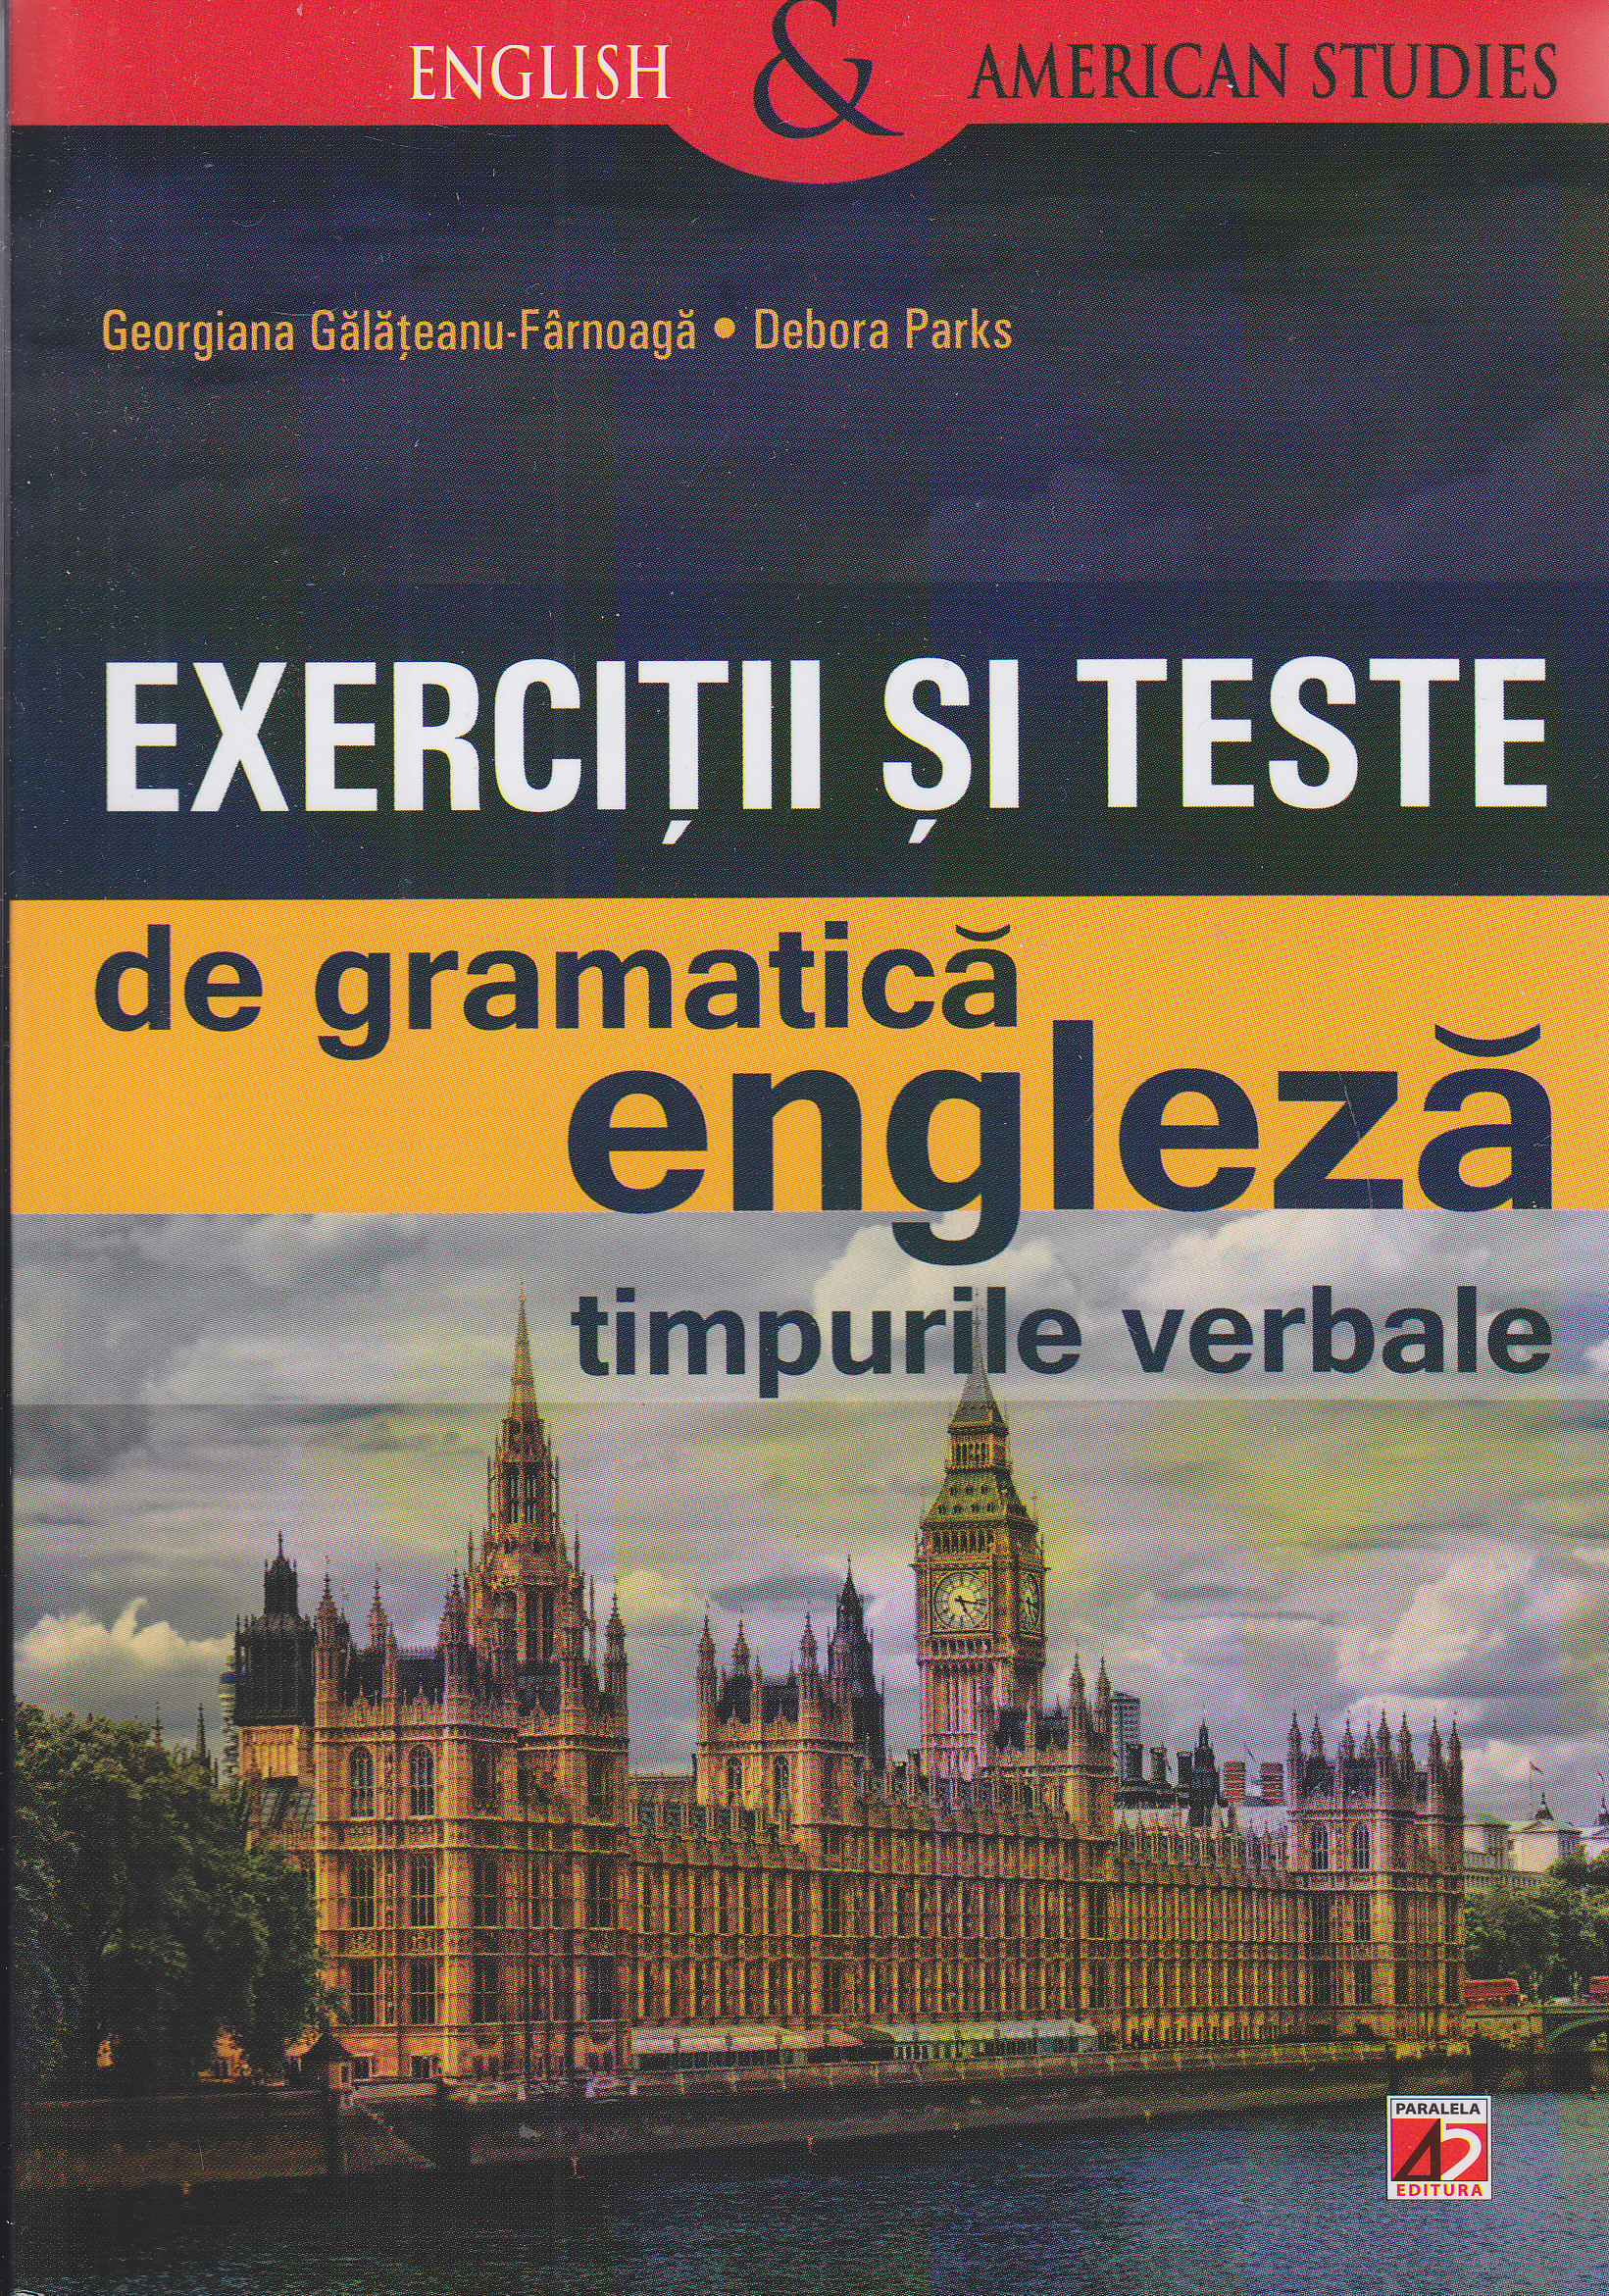 Exercitii si teste de gramatica engleza - Georgiana Galateanu - Farnoaga, Debora Parks